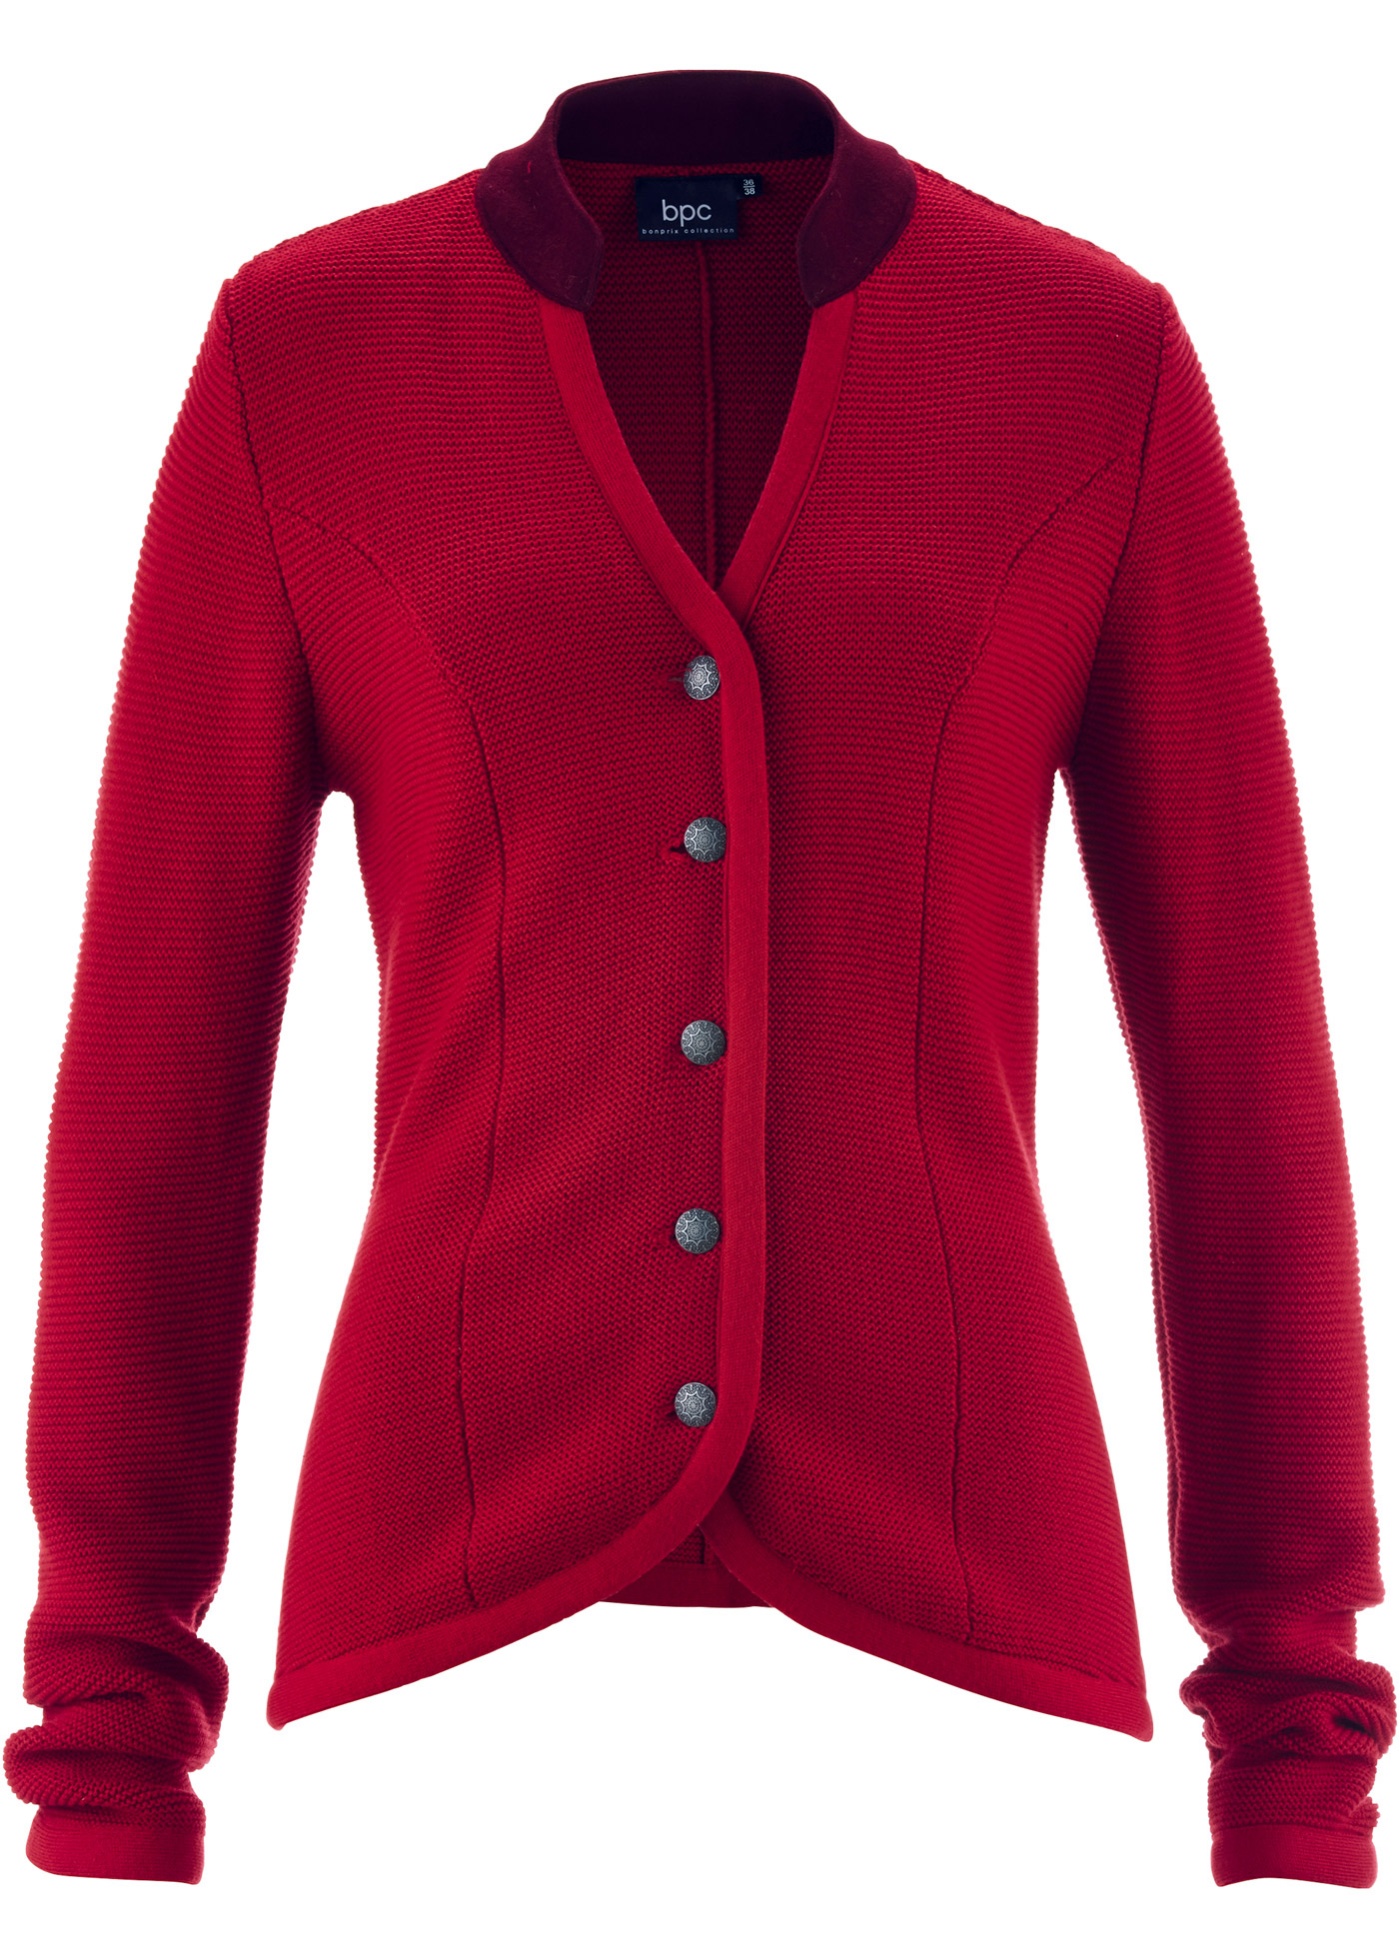 Cardigan tradizionale (Rosso) - bpc bonprix collection